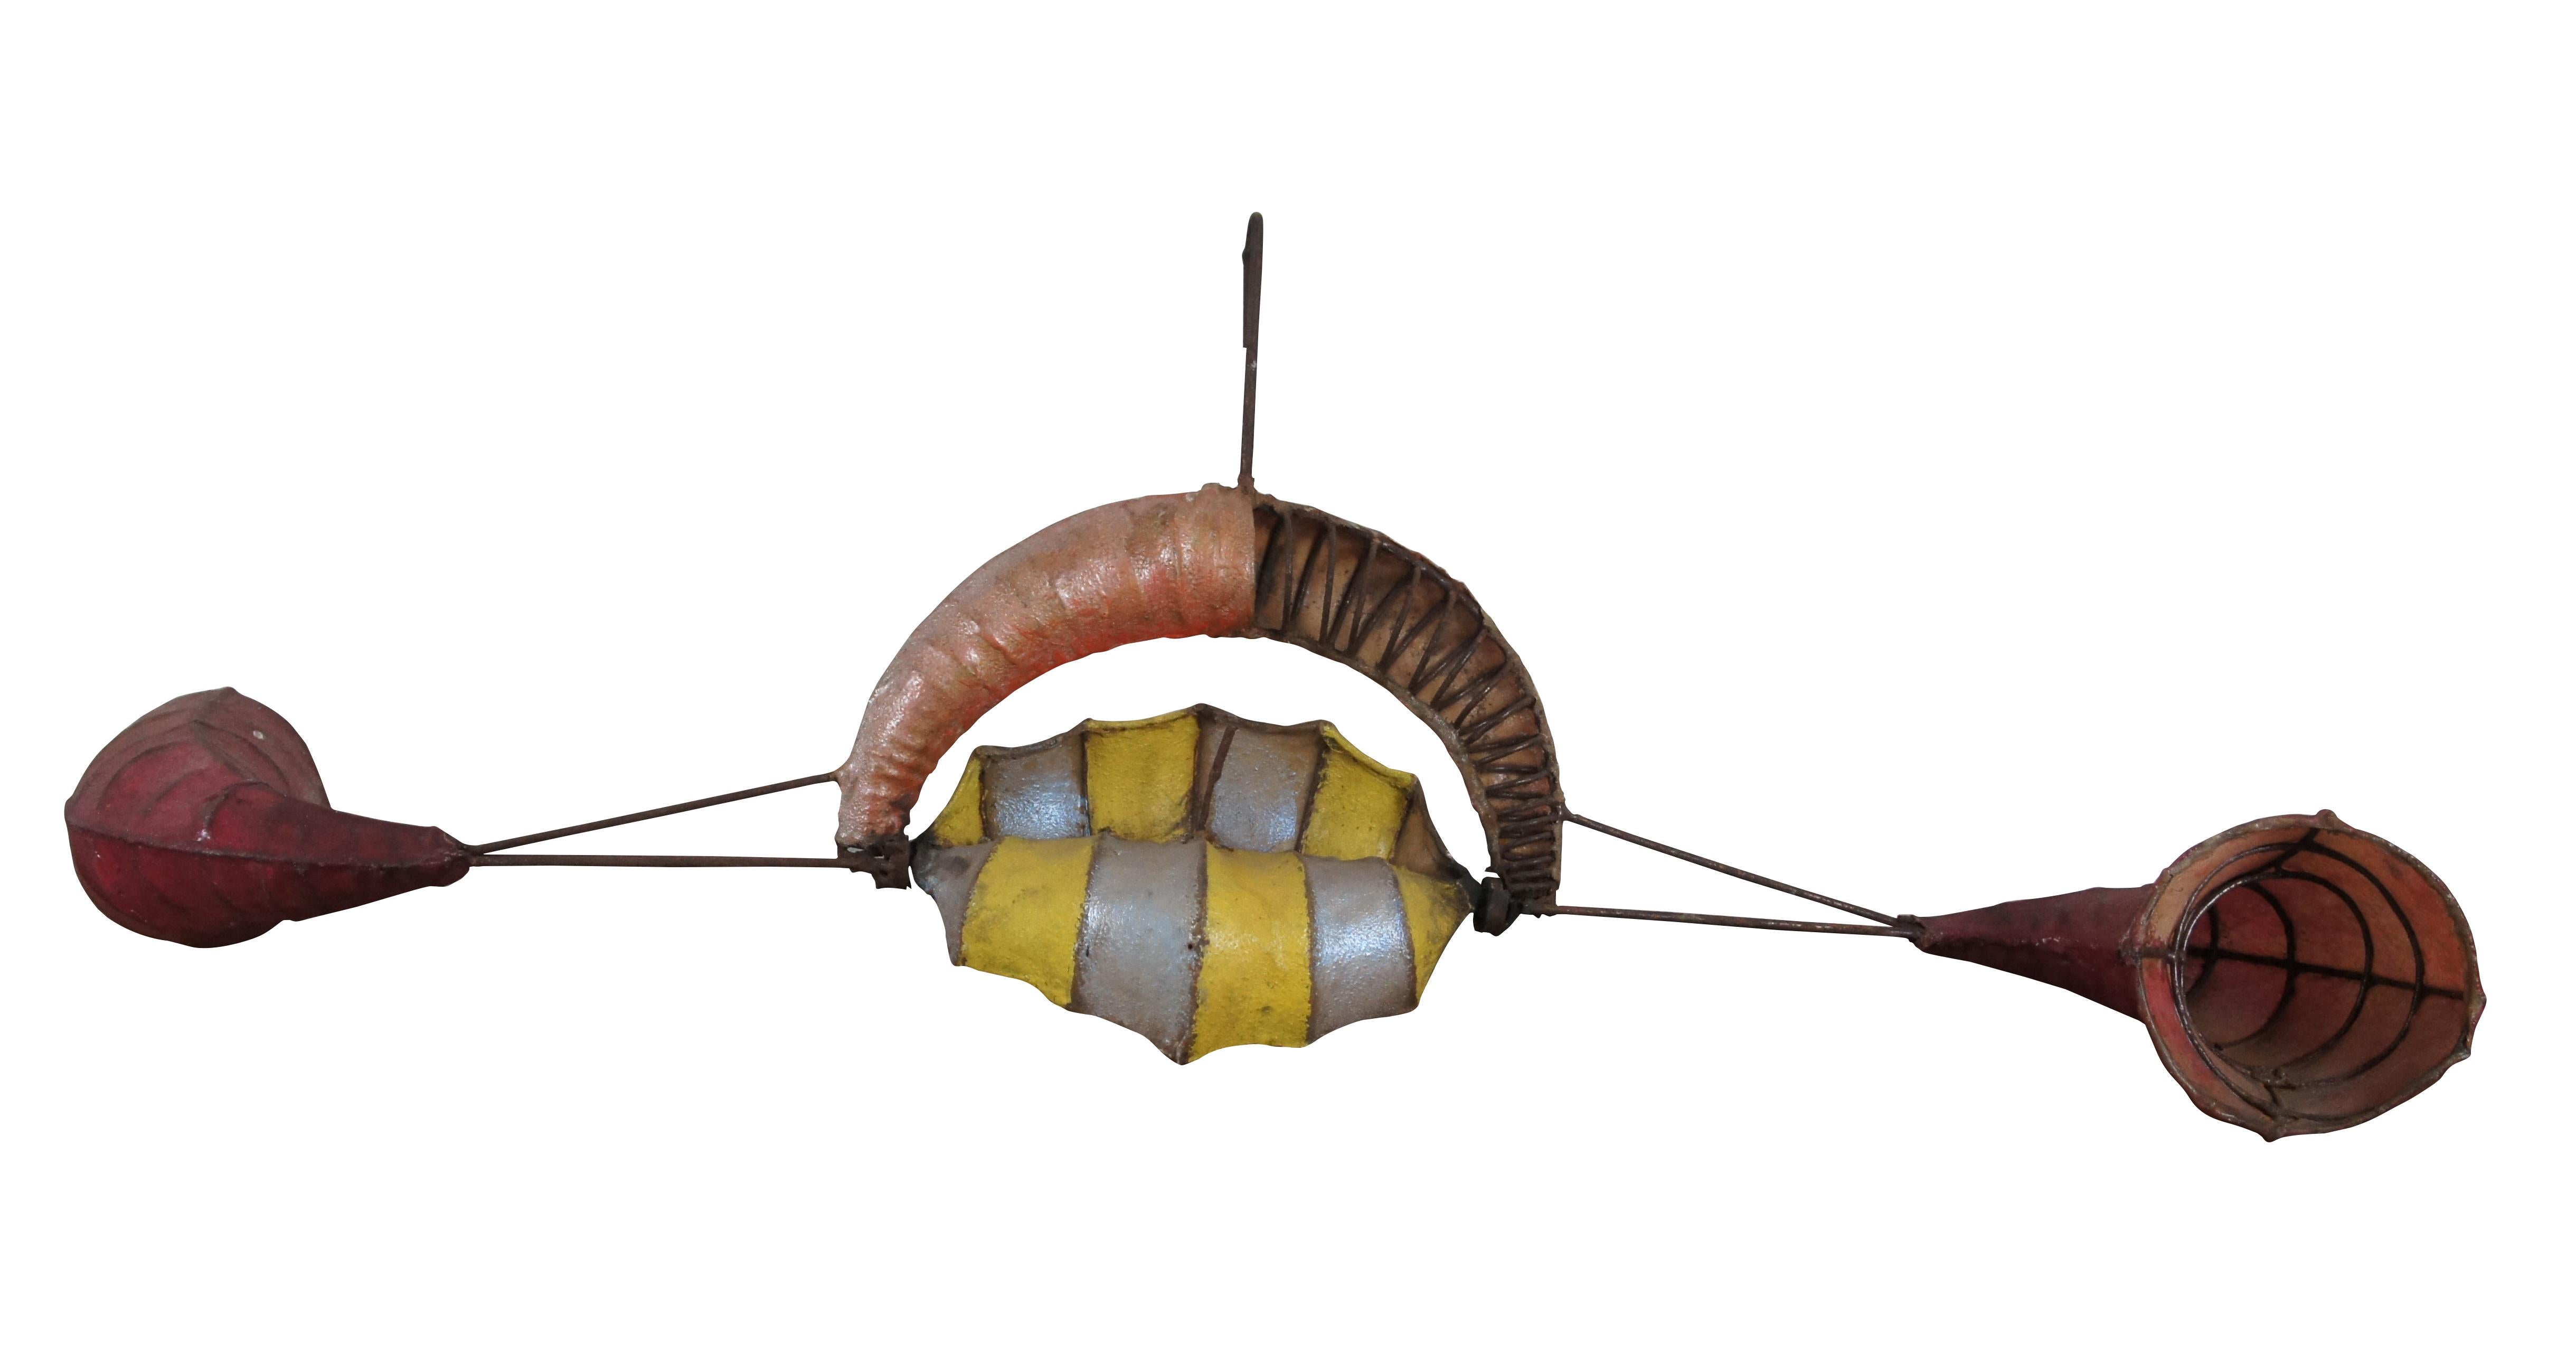 
Eine beeindruckende kinetische Windskulptur / Whirligig von Anthony Howe, ca. 1980er Jahre.   Hergestellt aus gewickeltem/geschweißtem Eisen und Harz/Verbundstoff mit Ornamenten in Horn- und Muschelform.

Anthony Howe (geboren 1954) ist ein